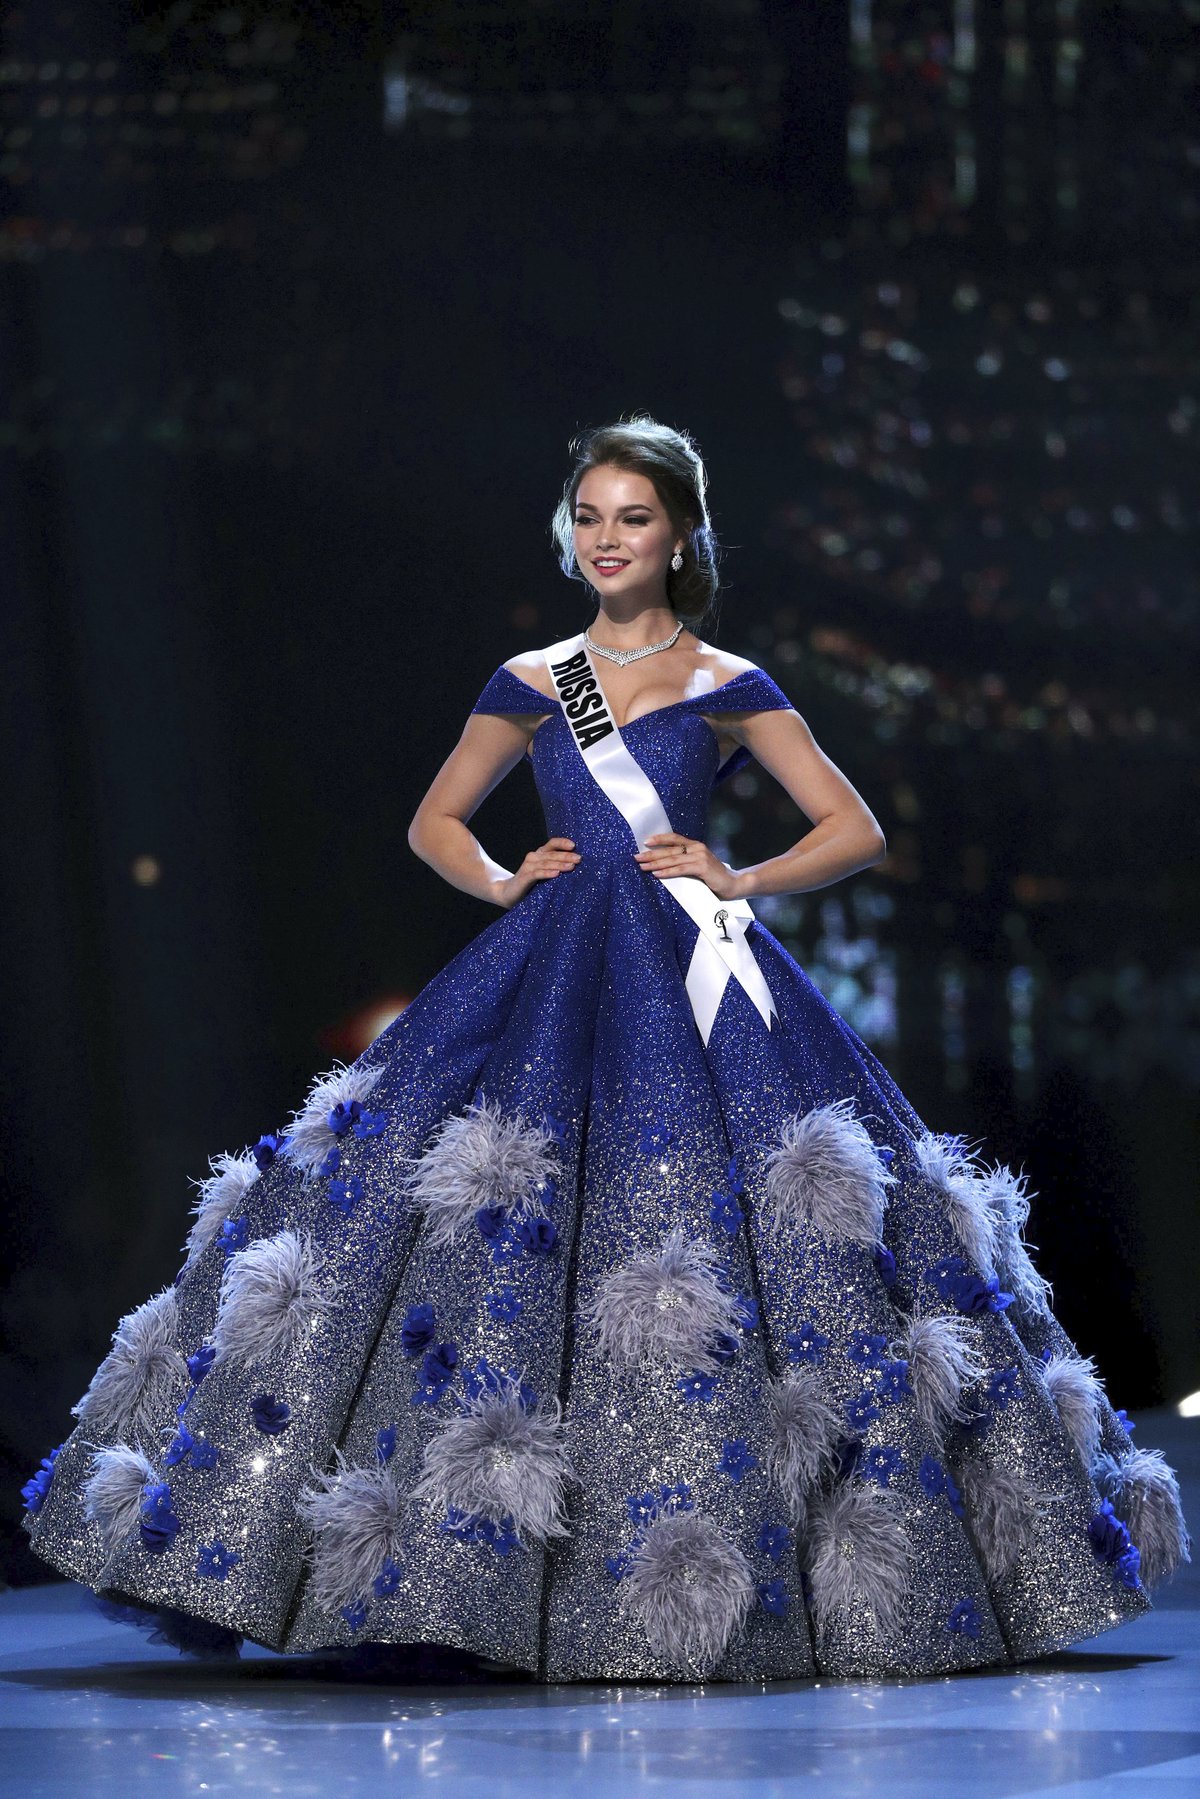 Titul Miss Universe roku 2018 v thajském Bangkoku získala Catriona Elisa Gray (24) z Filipín. Česká Miss Lea Šteflíčková se nedostala ani do finálové dvacítky.